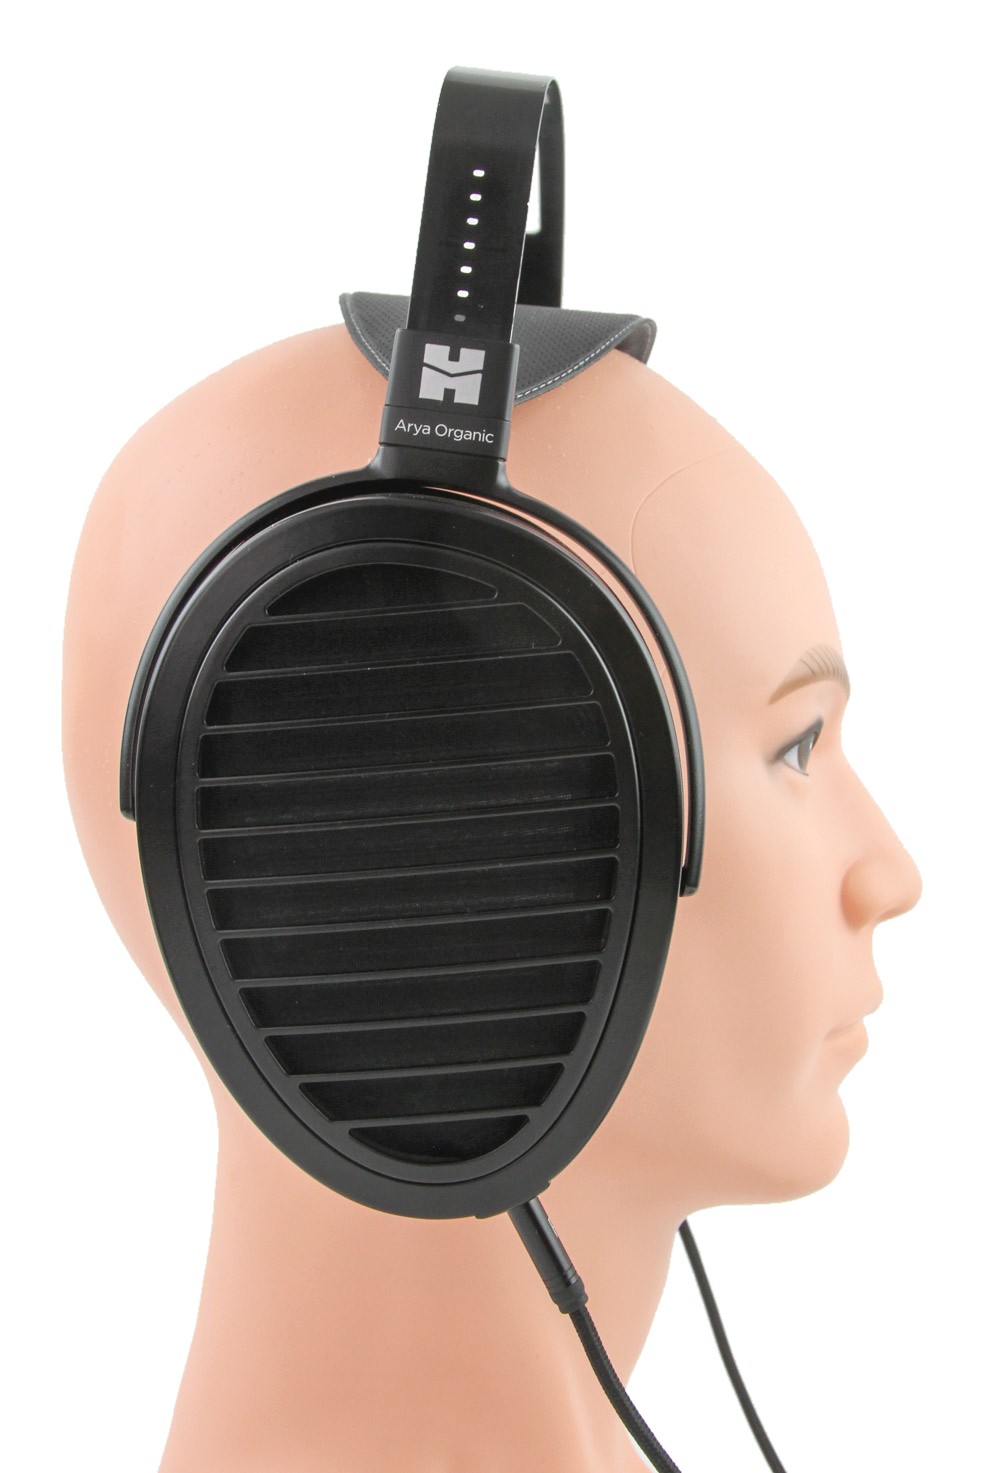 HIFIMAN Arya Organic Open-Back Headphones Review - Fit, Comfort